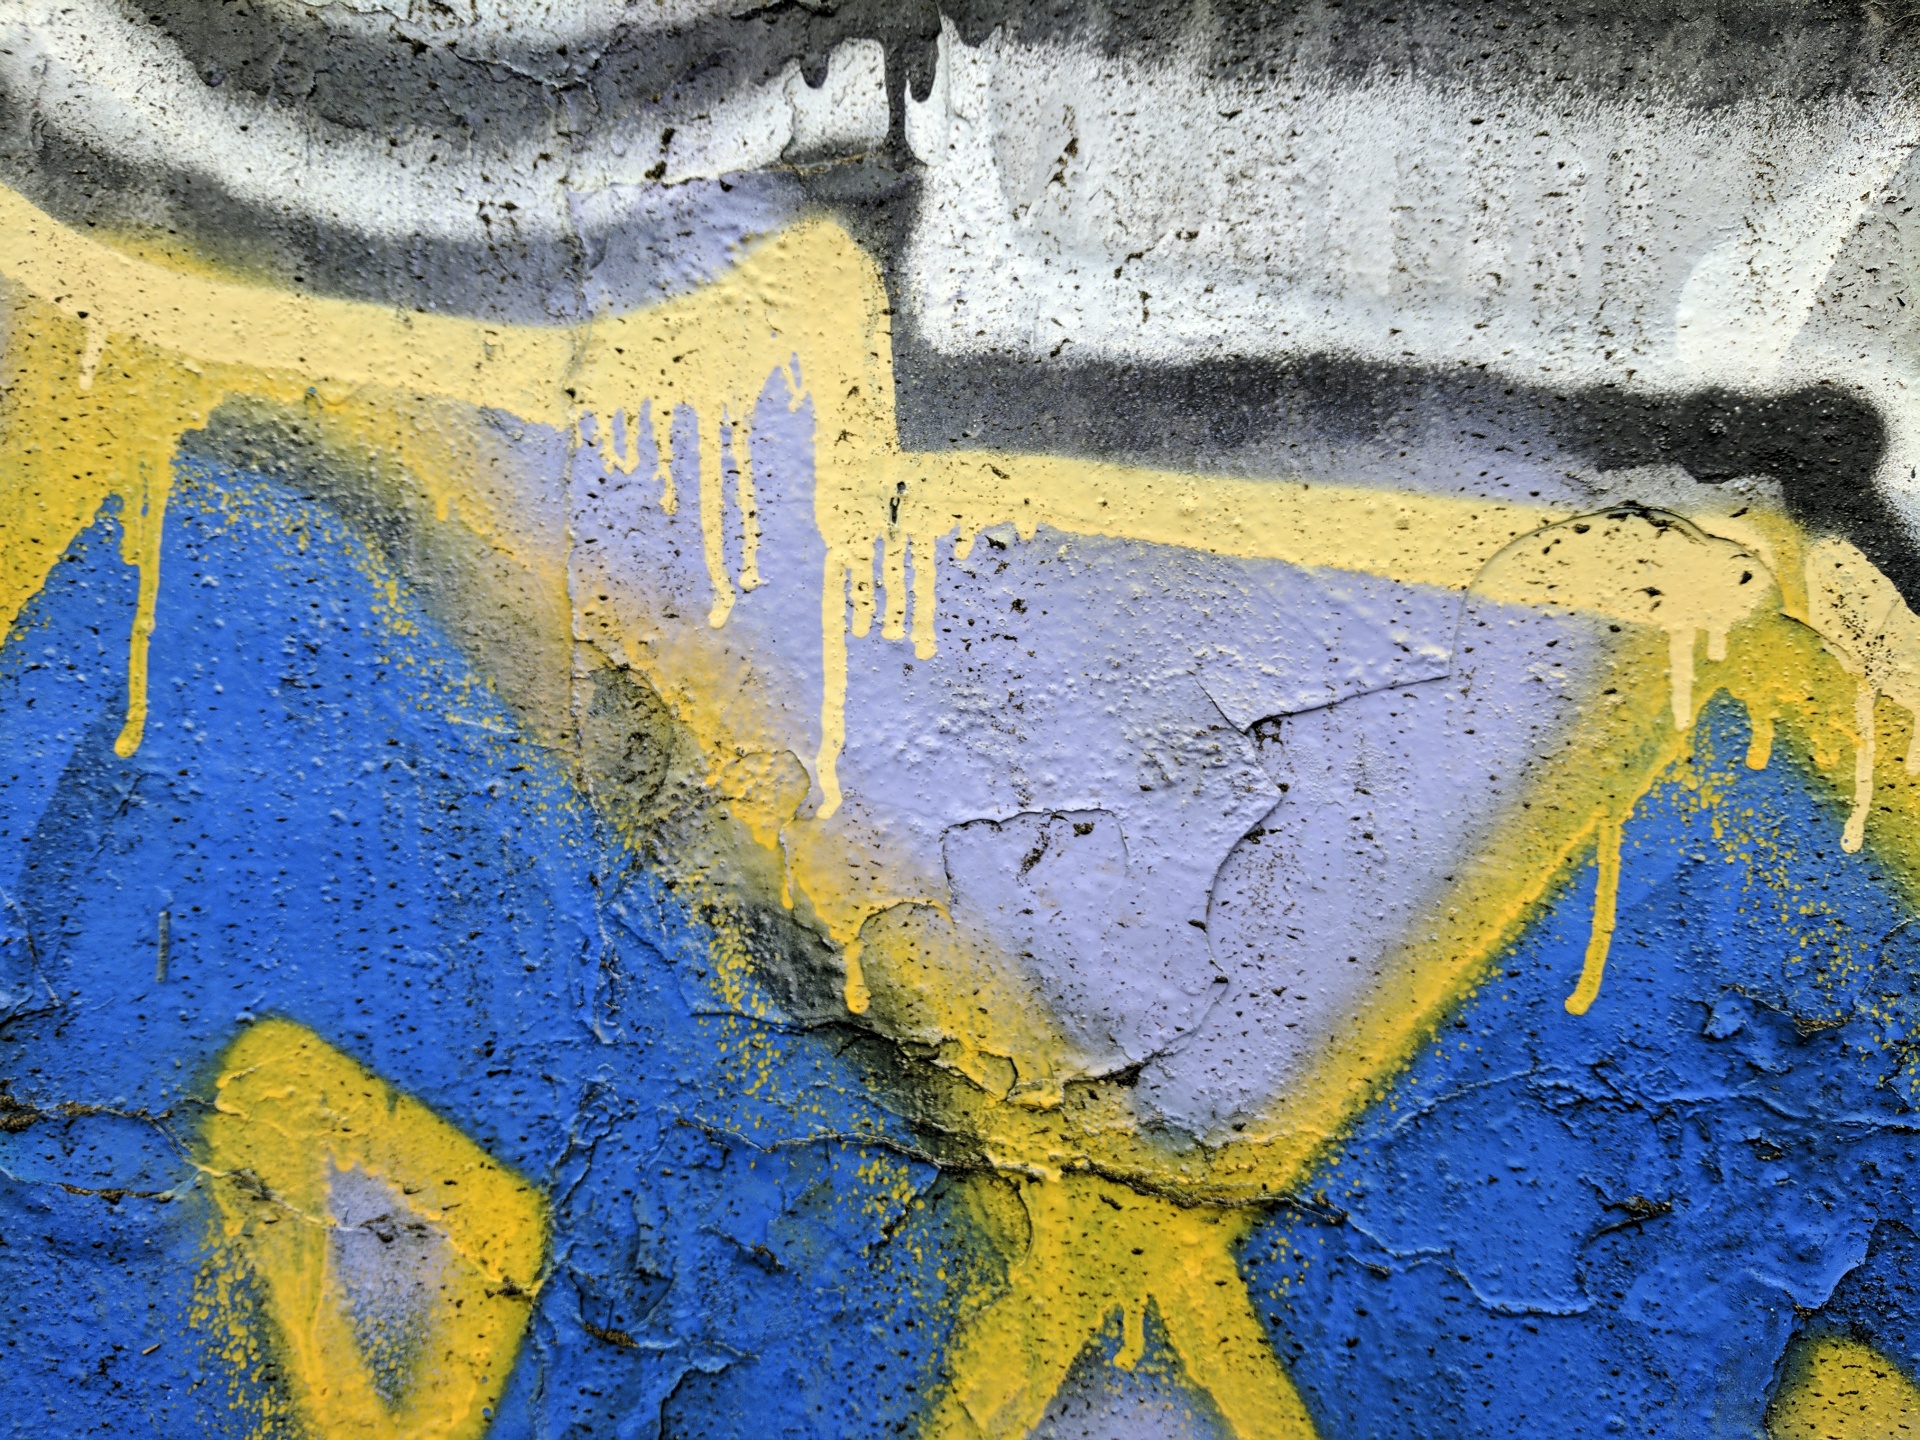 Graffiti azul e amarelo